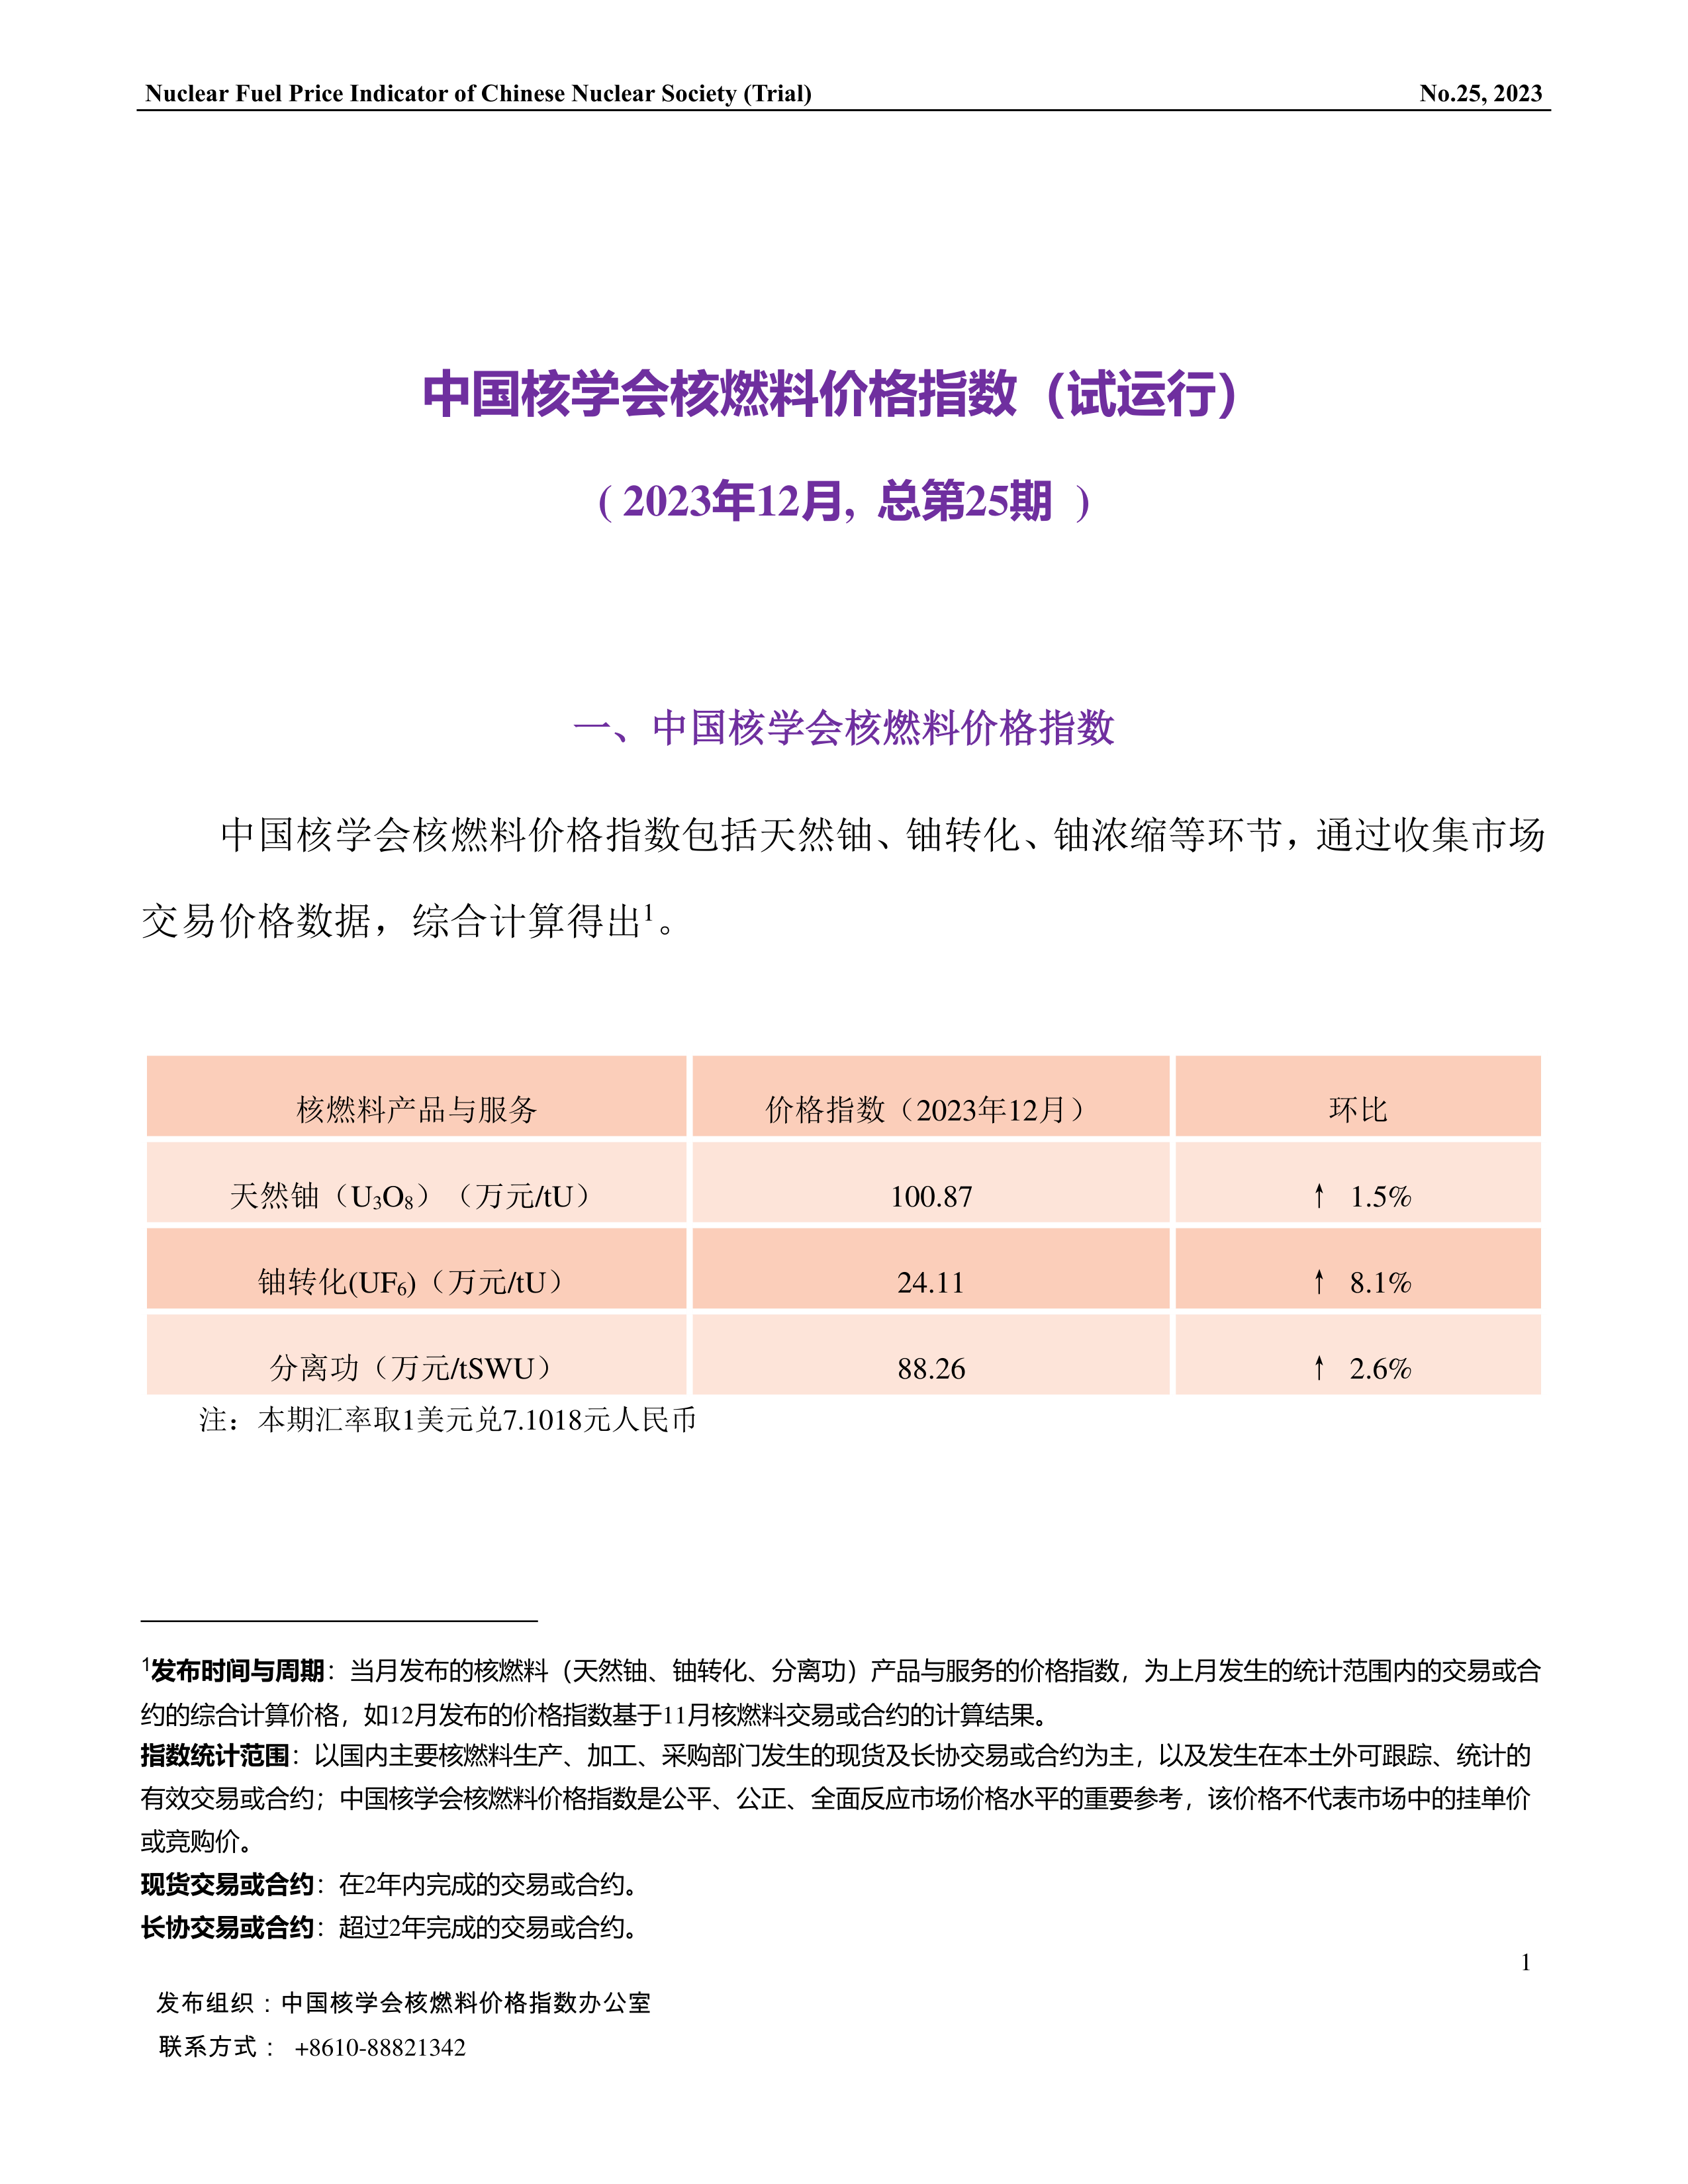 中国核学会核燃料价格指数(试运行)（2023年12月,总第25期）终稿_CN-1.png